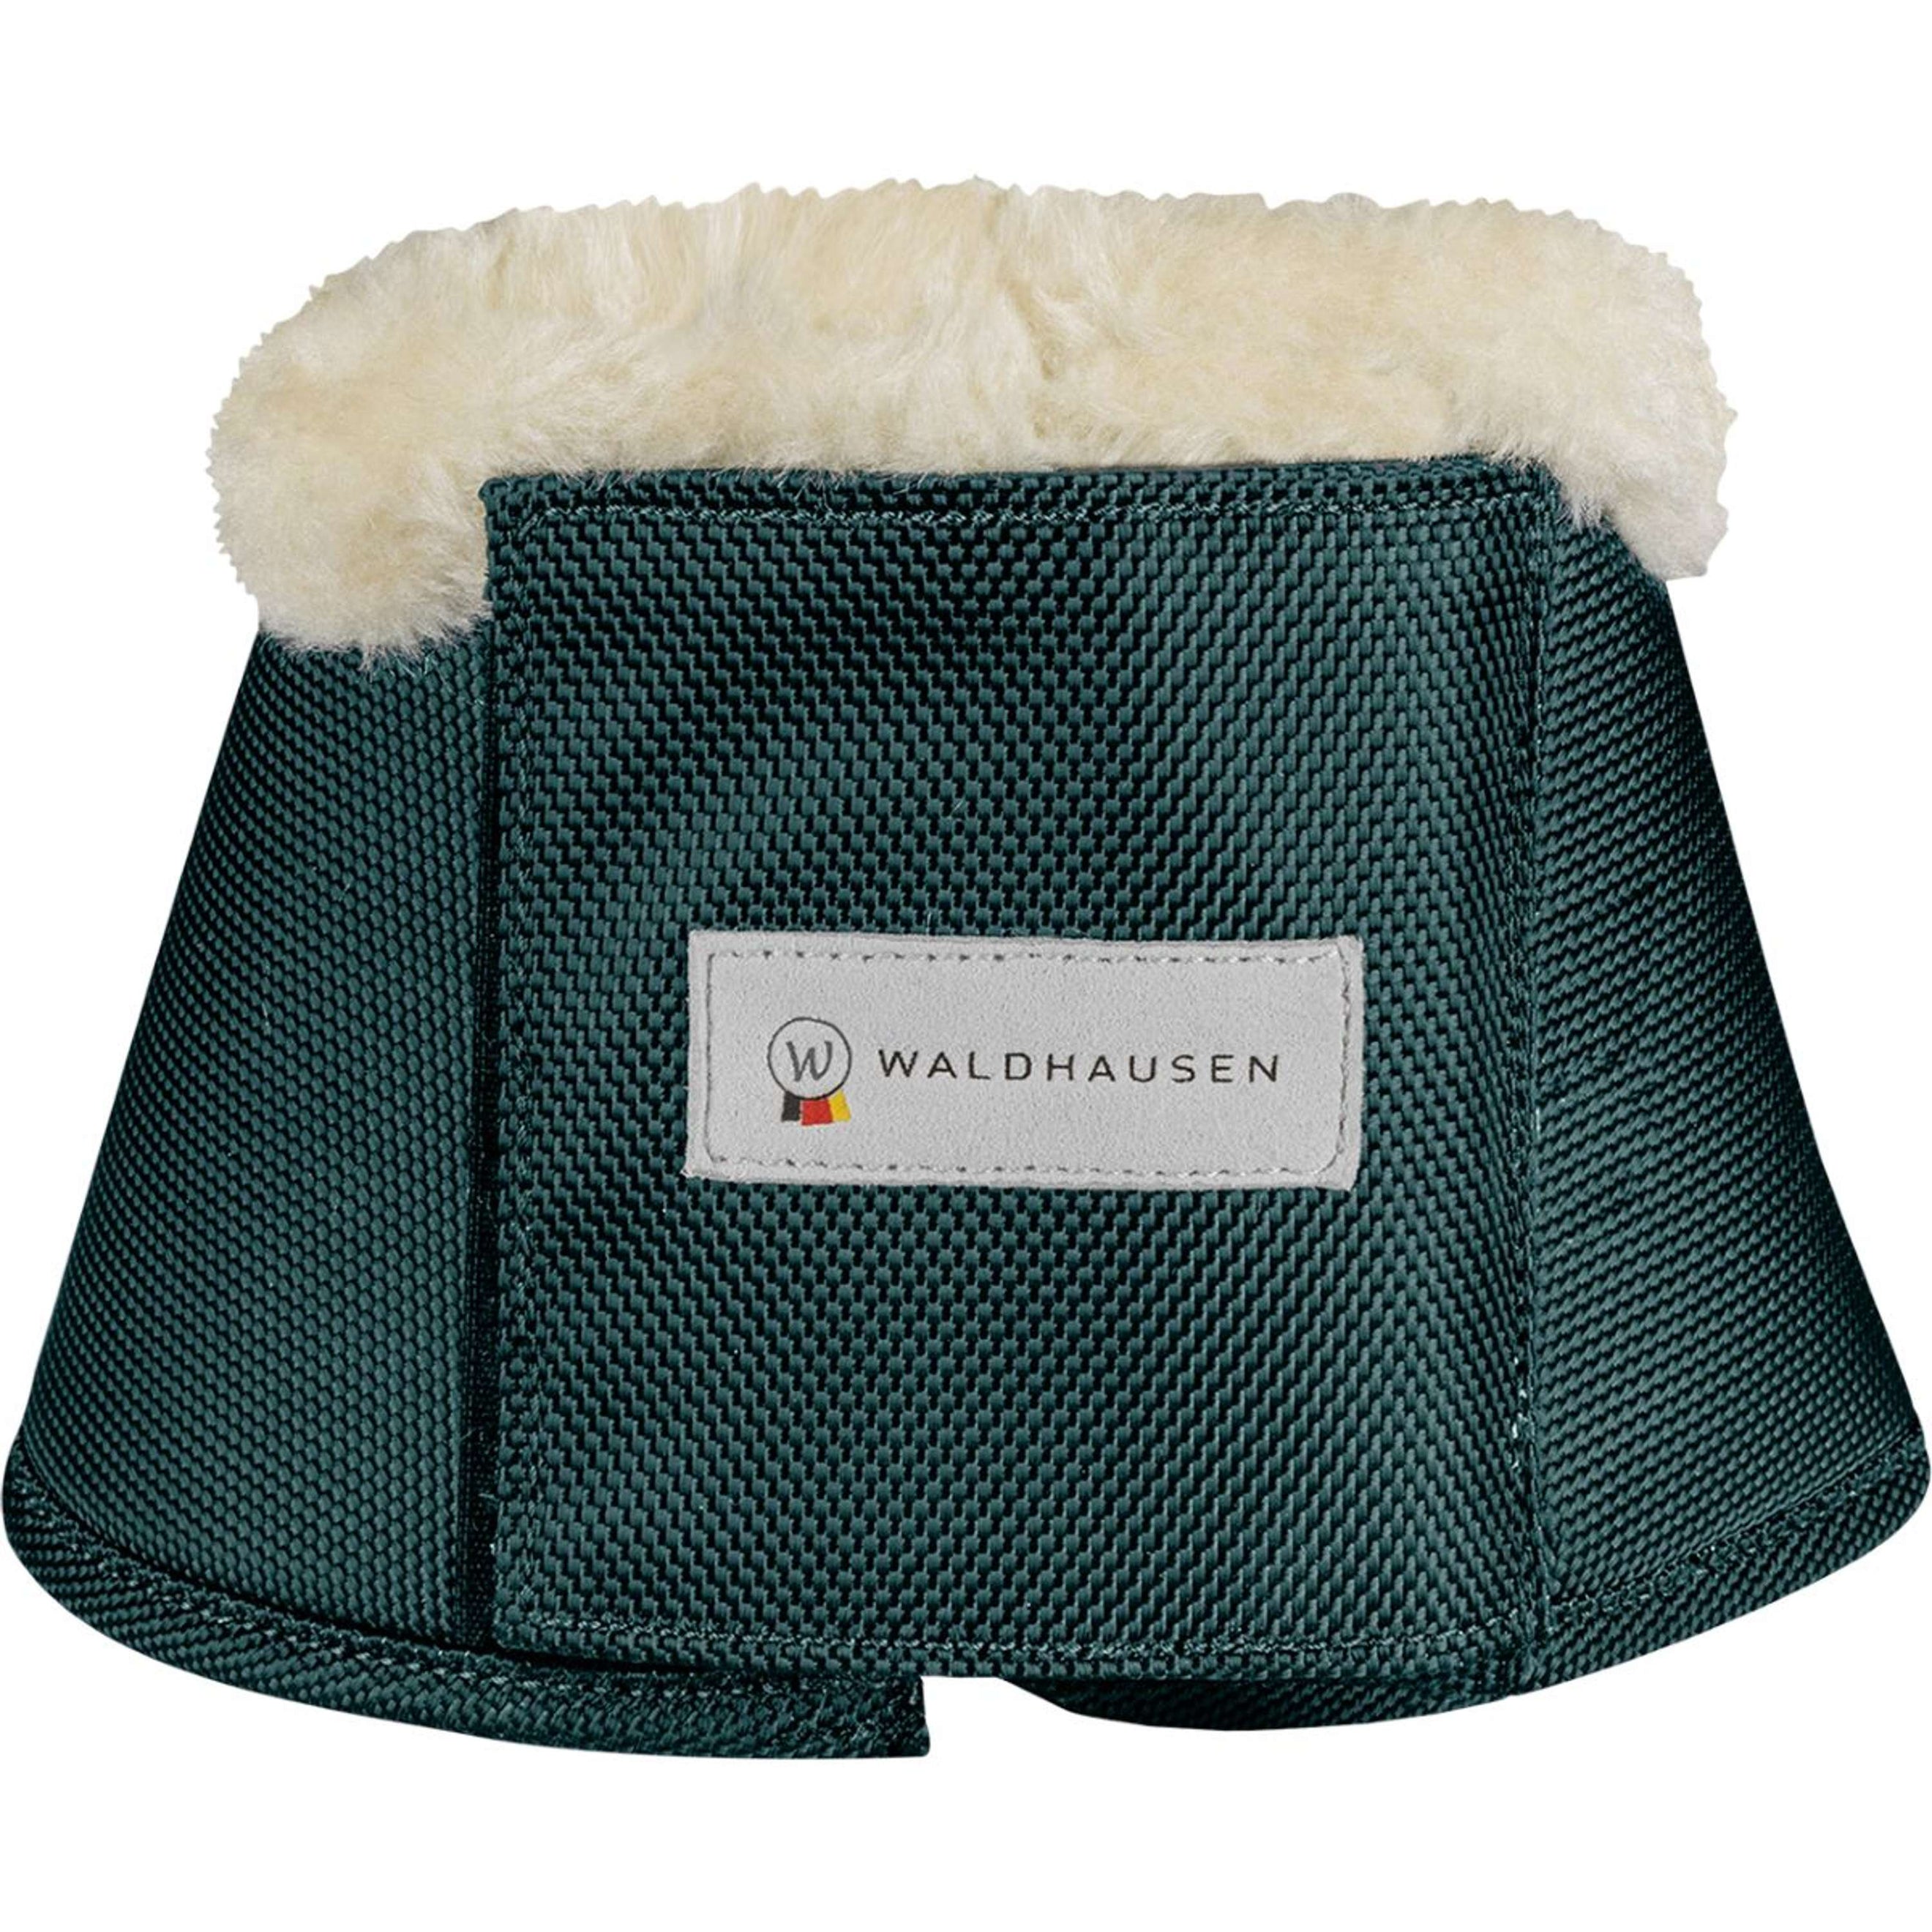 Waldhausen Cloches d'Obstacles Comfort Fur Fir Green